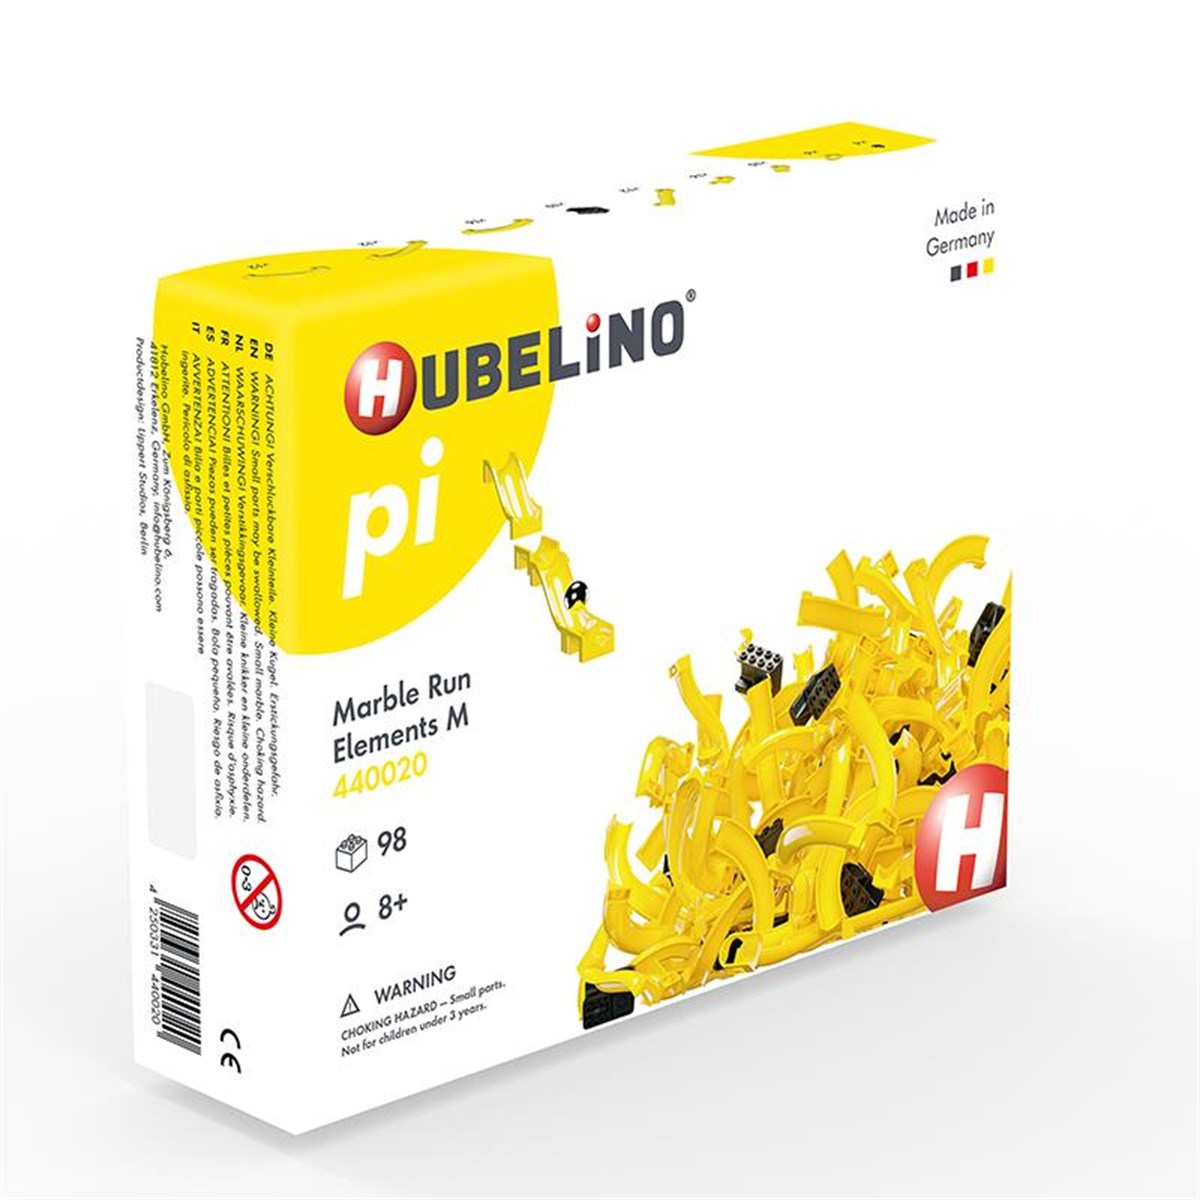 Hubelino Pi Marble Run Blok Yapım Parçaları  (98 Parça) 440020 | Toysall